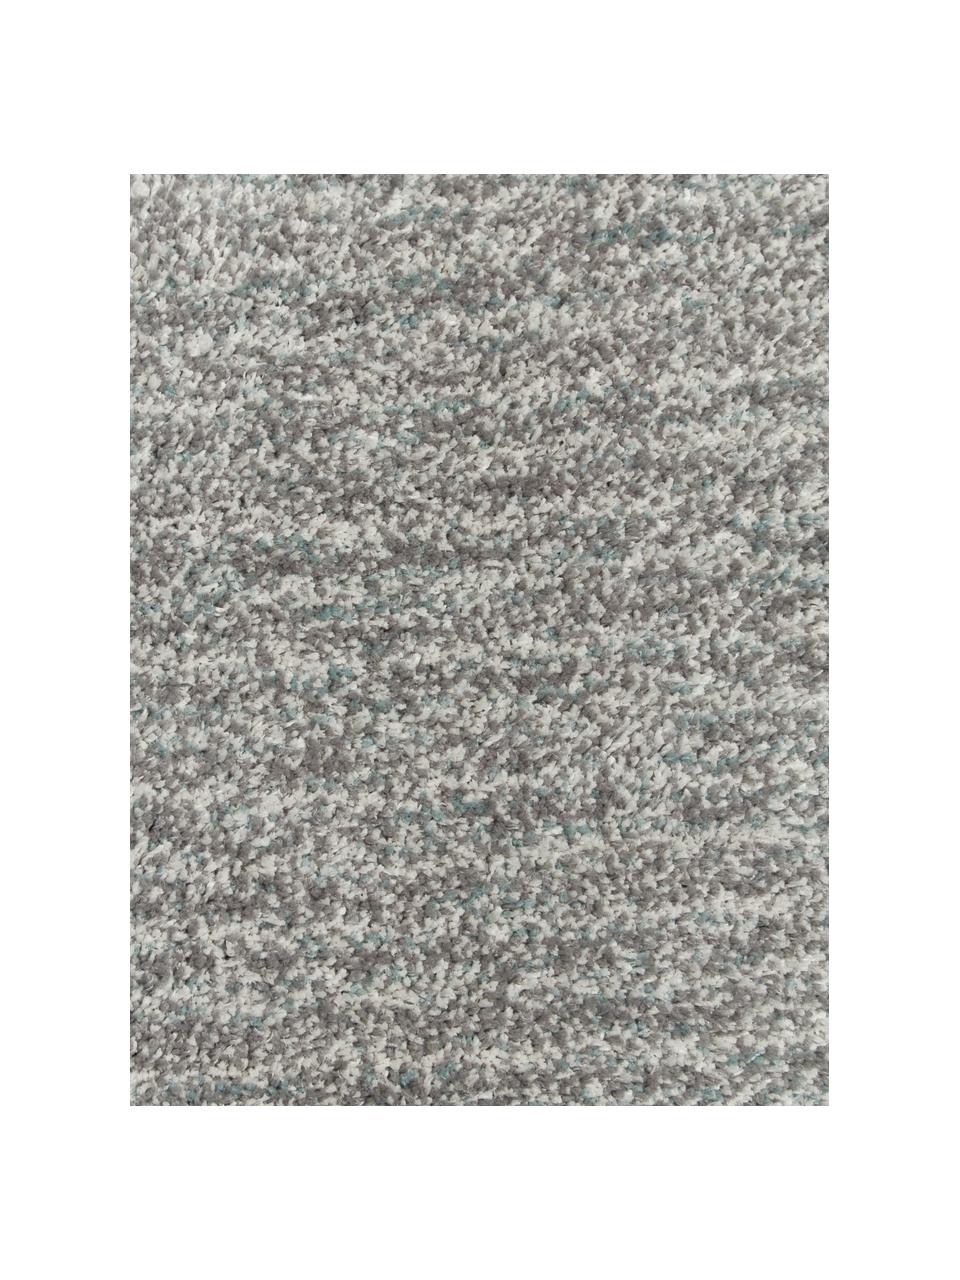 Fluffy hoogpolige loper Marsha in grijs/mintgroen, Grijs, mintgroen, B 80 x L 200 cm